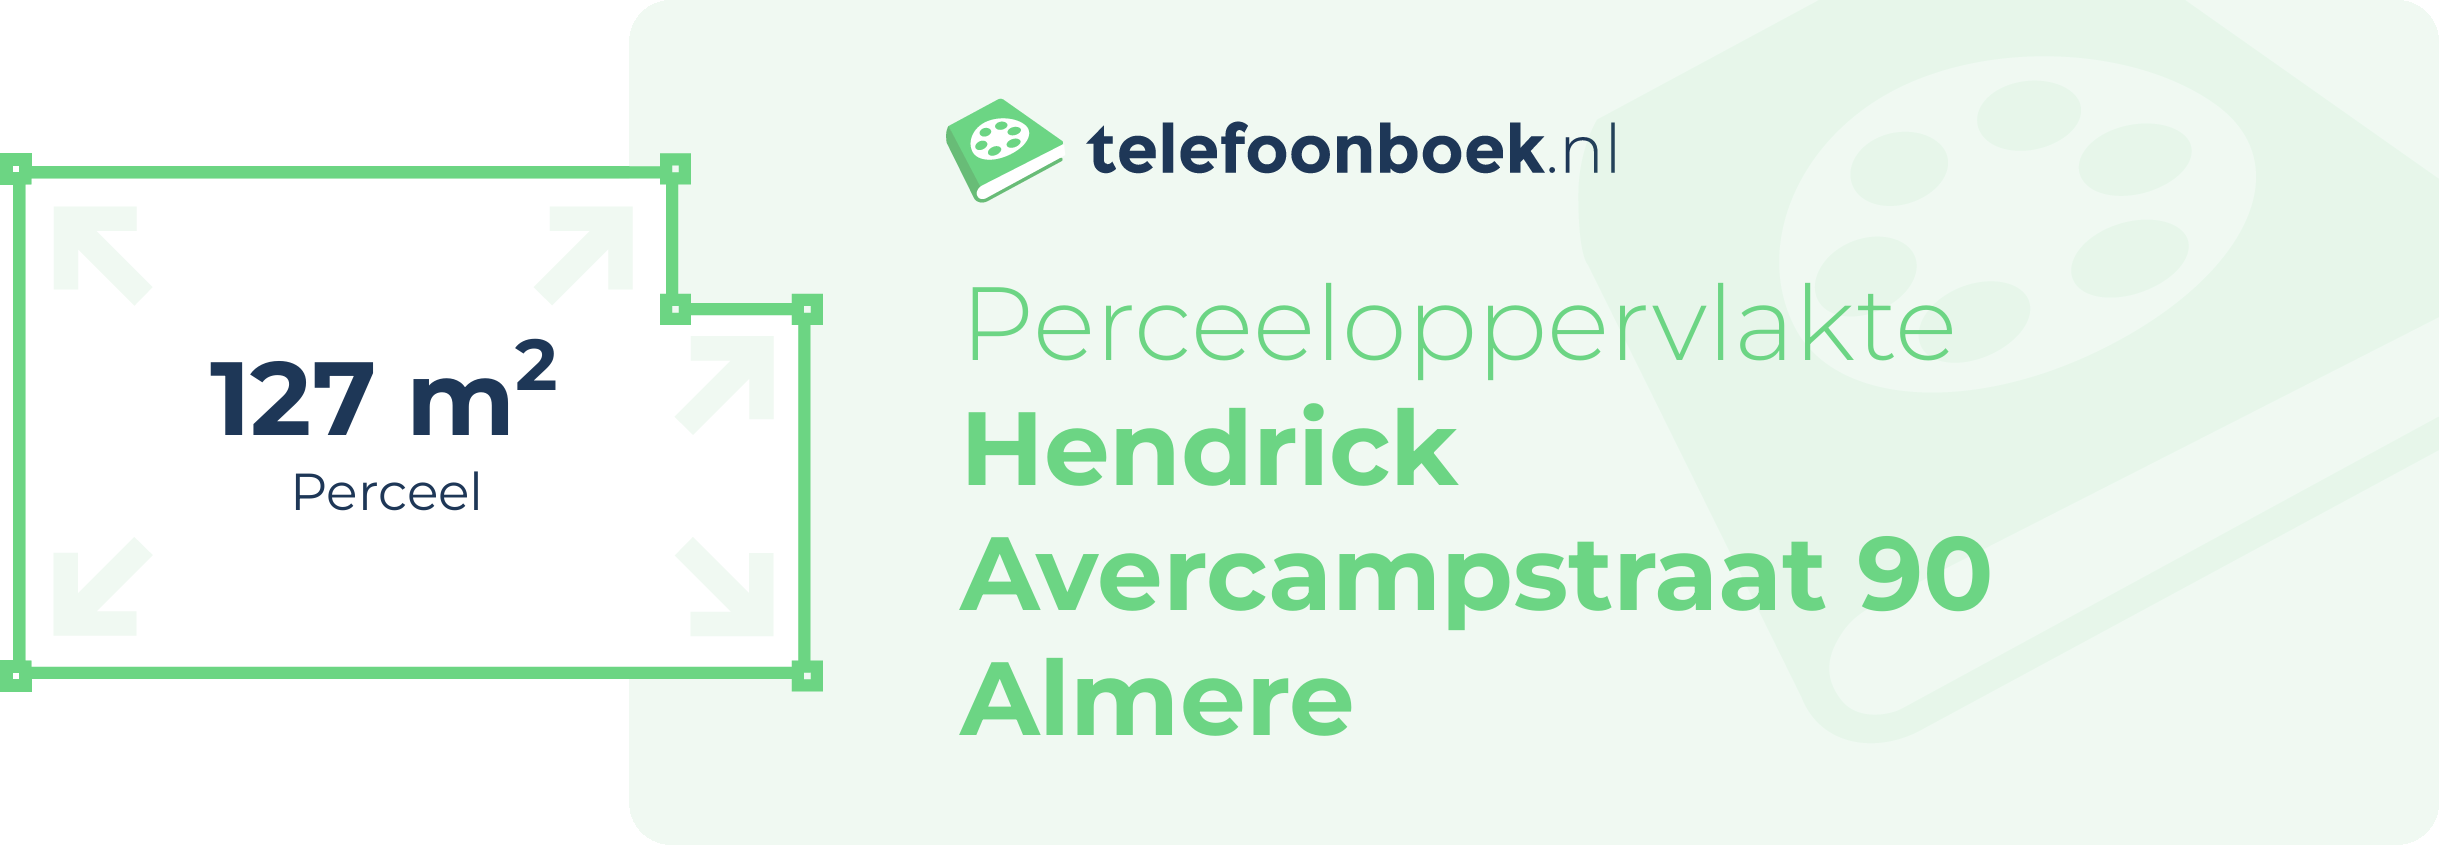 Perceeloppervlakte Hendrick Avercampstraat 90 Almere